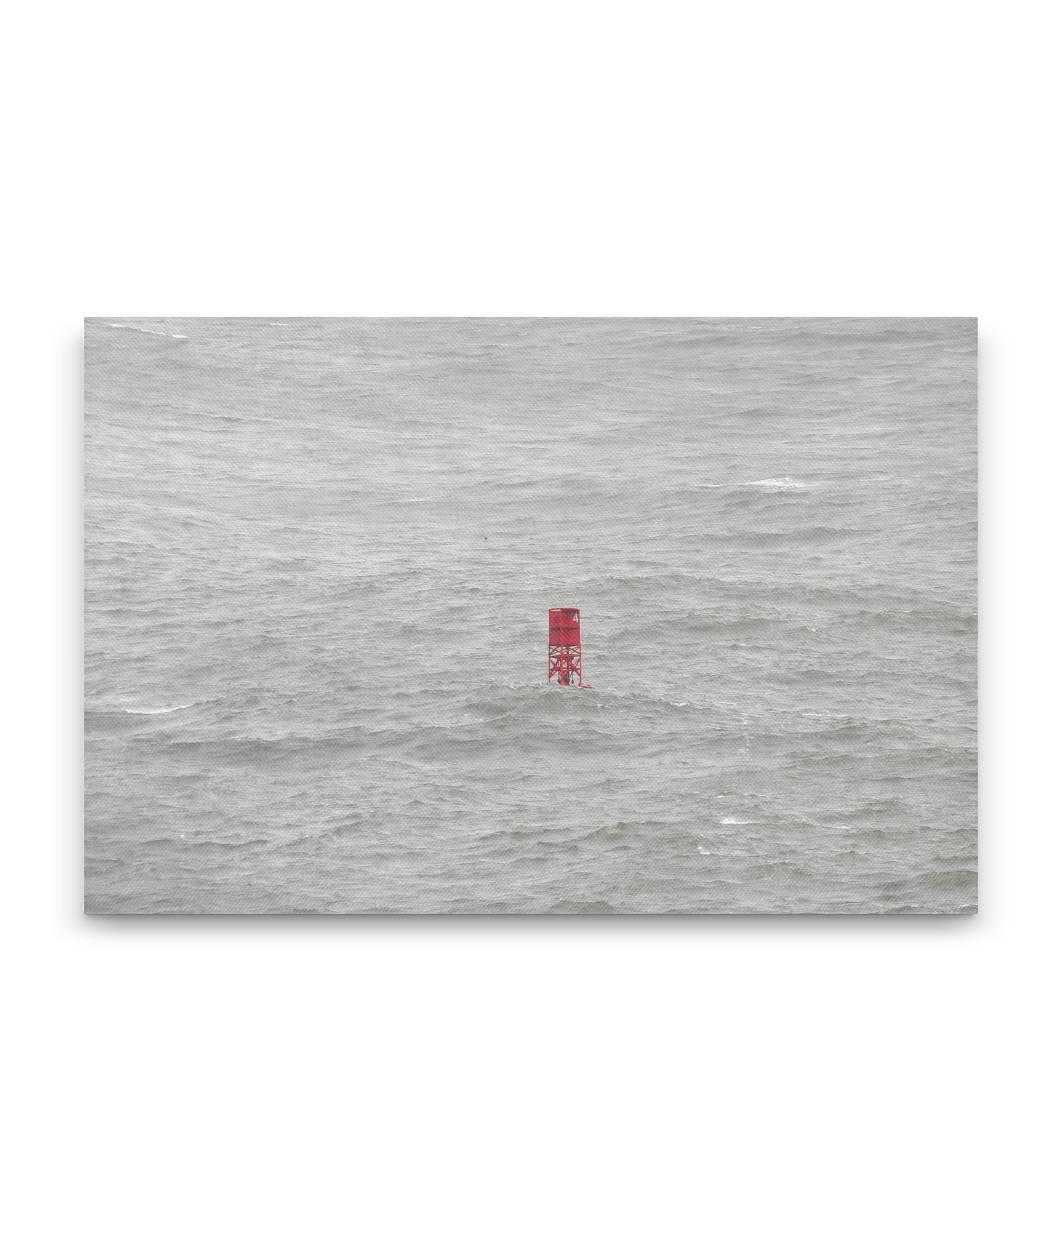 Ocean Buoy in Rough Weather, Trinidad Bay, California